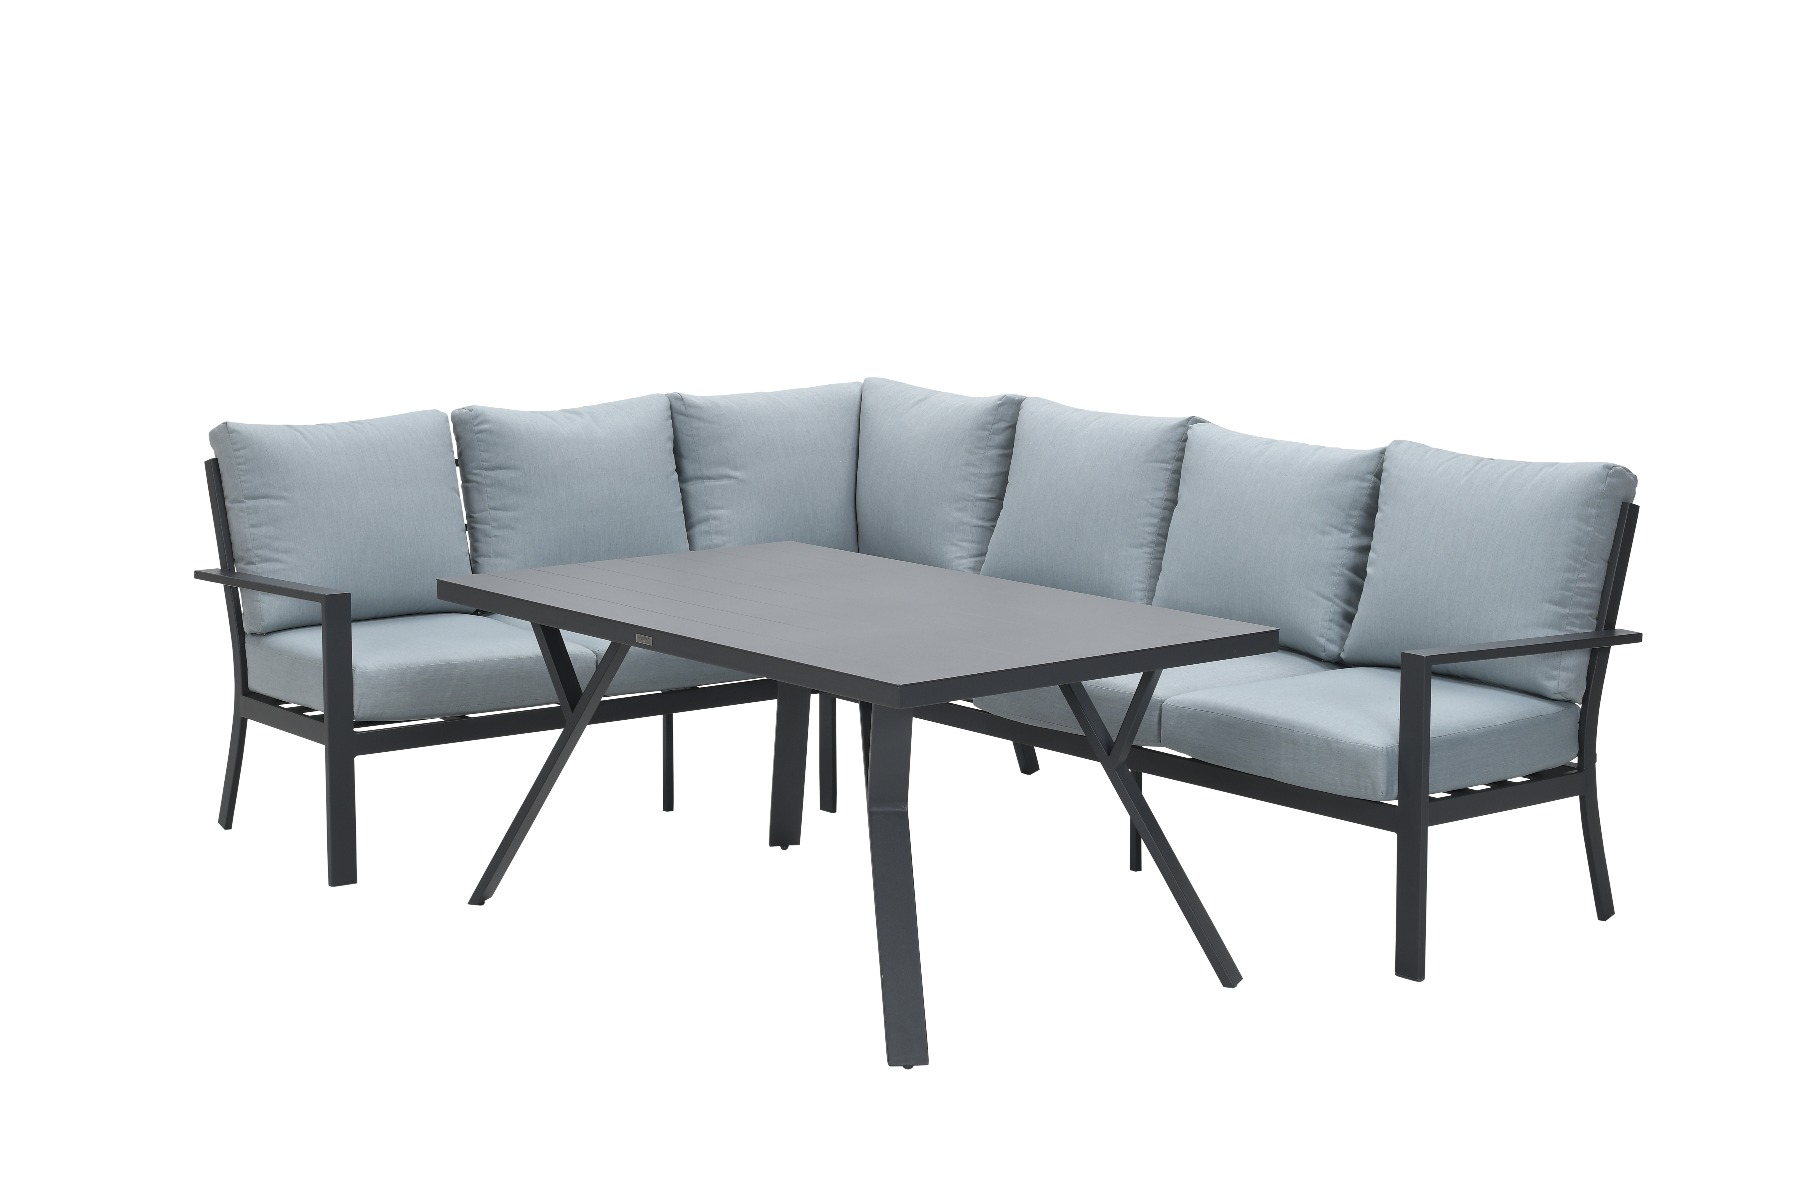 Sergio lounge dining set 3-delig - Links - Carbon black/Mint grey